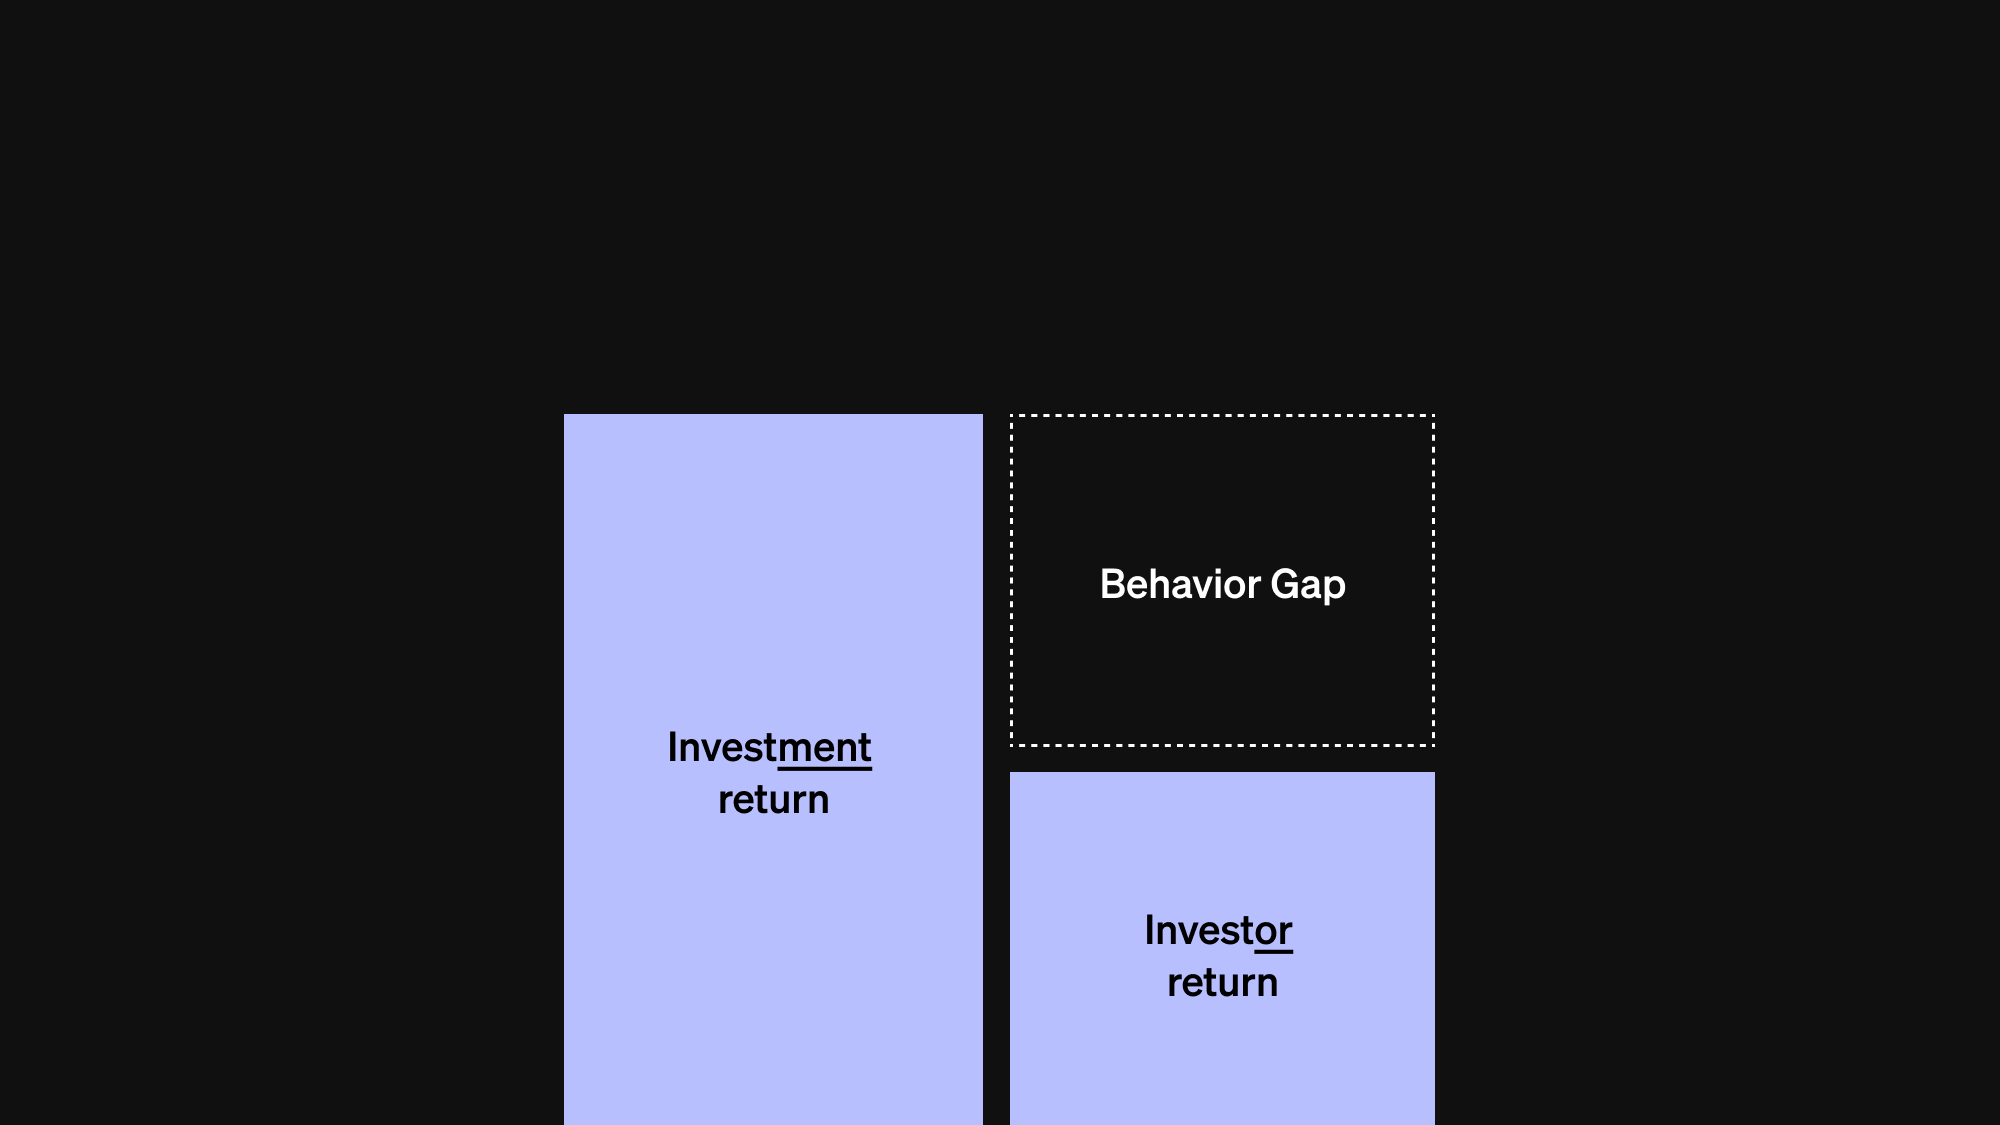 Stapeldiagram som beskriver hur The Behavior Gap fungerar. Den högre stapeln har rubriken "Investment return" och den lägre stapeln har rubriken "Investor return". Skillnaden mellan dessa staplar har rubriken "Behavior Gap".